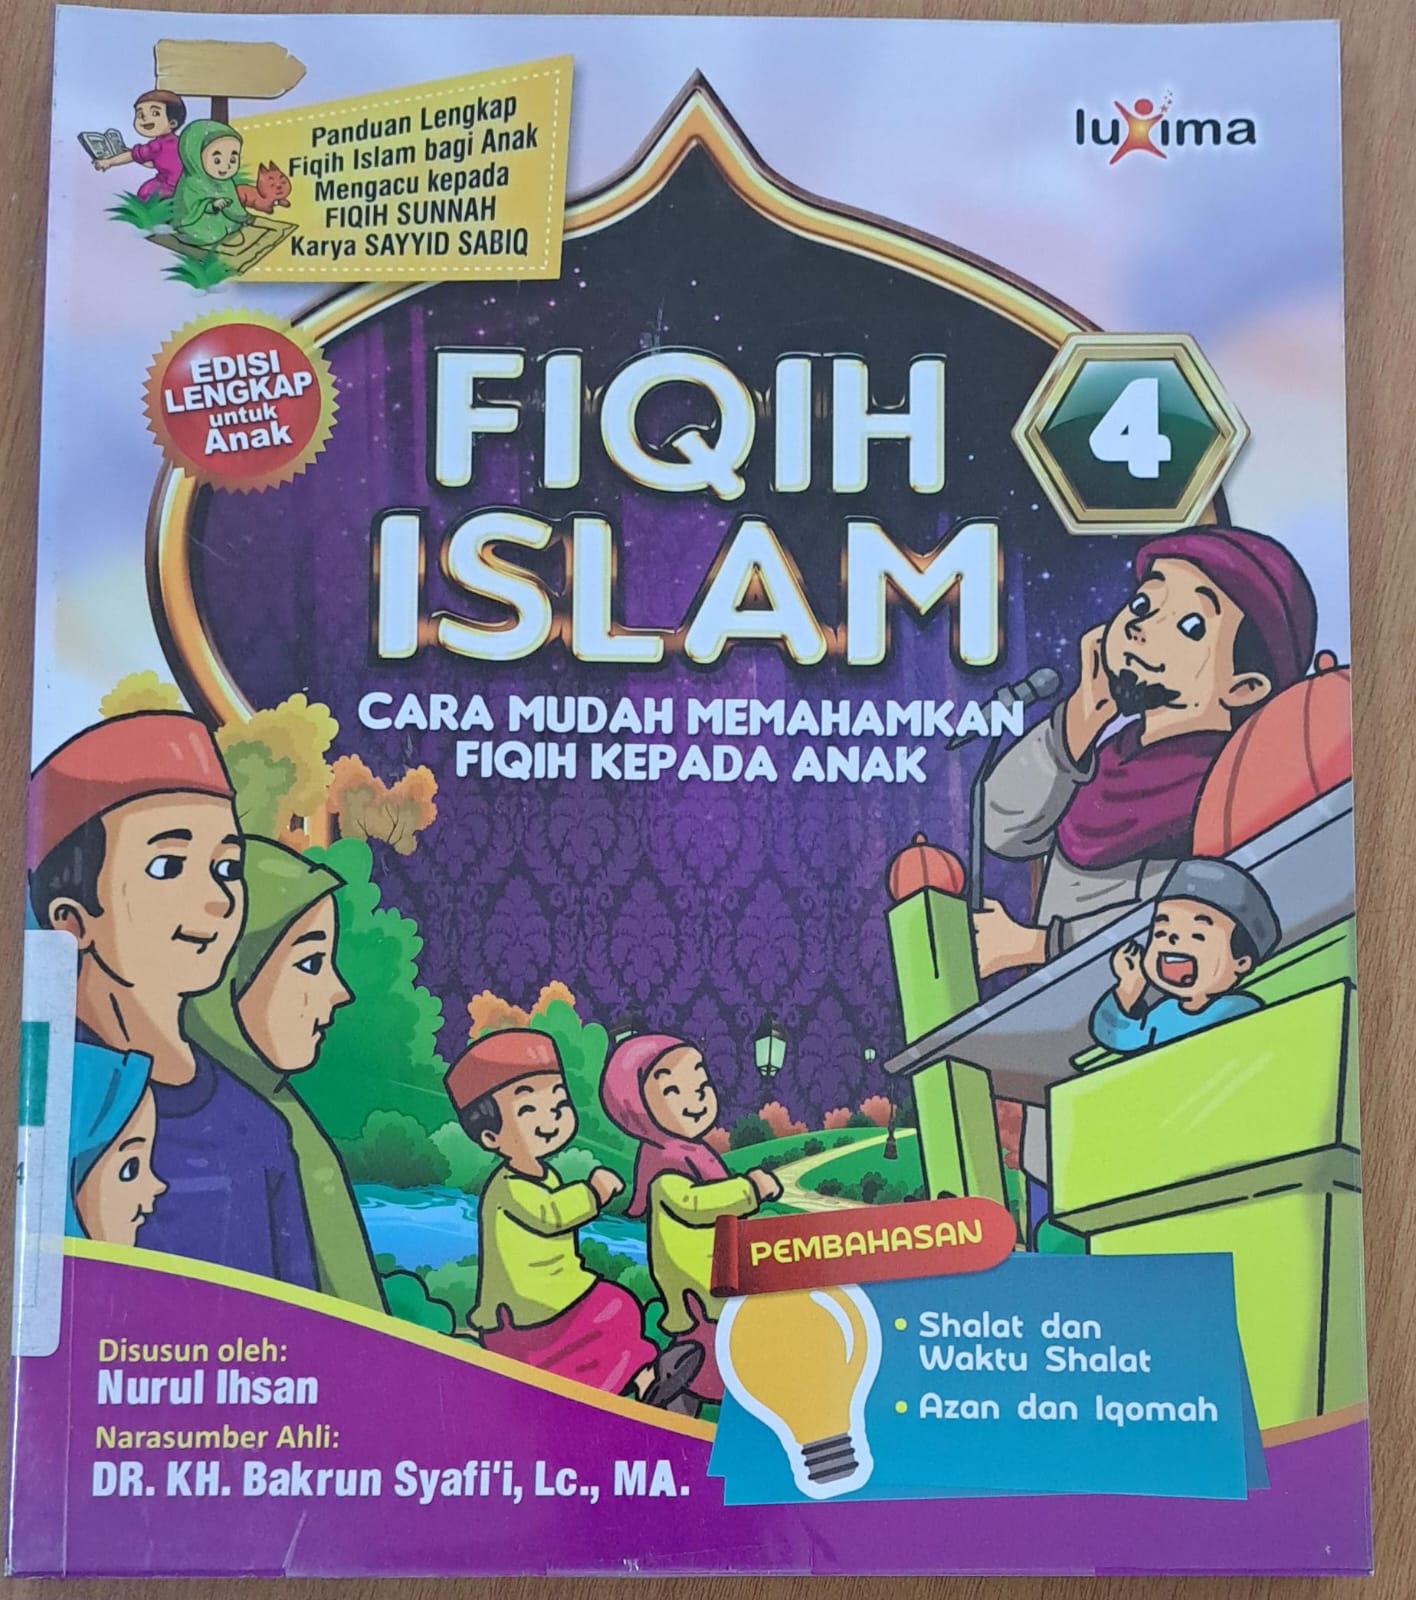 Fiqih islam jilid 4 :  Cara mudah memahamkan fiqih kepada anak